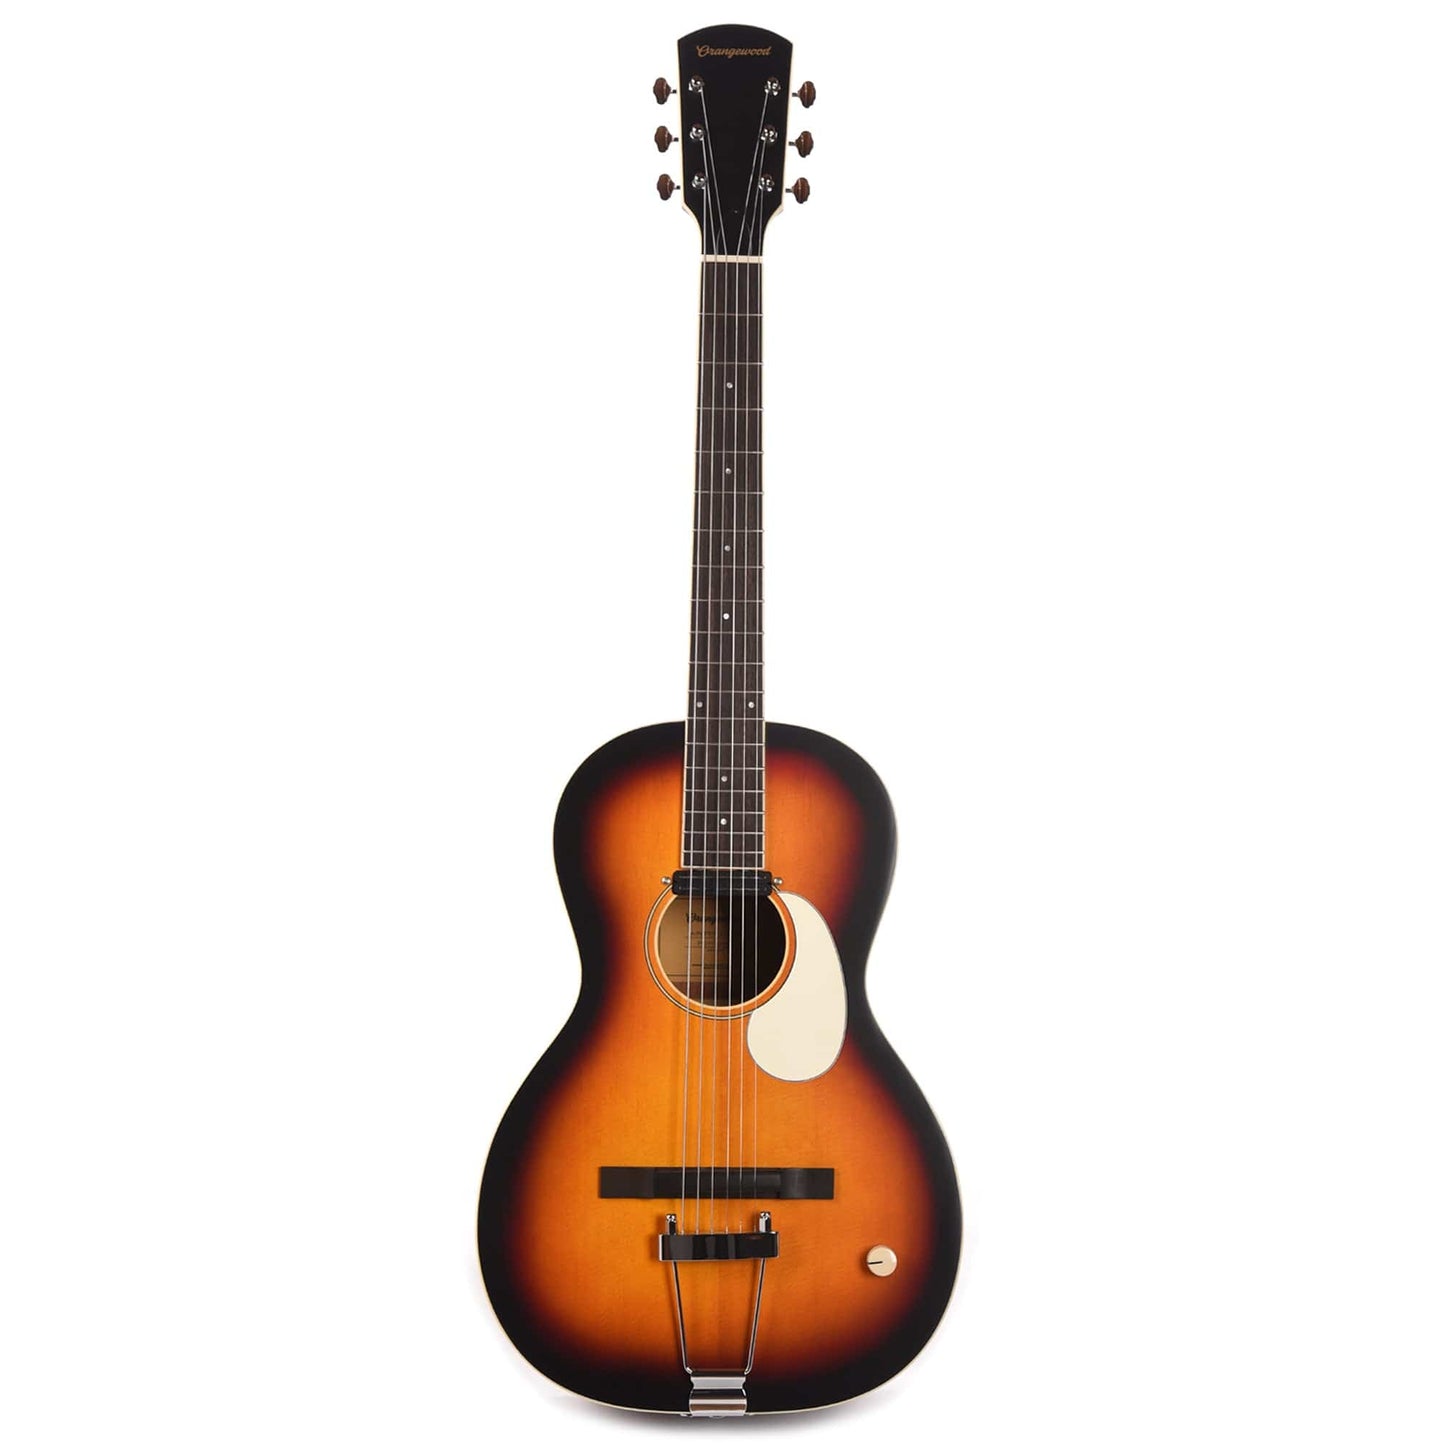 Orangewood Juniper Sunburst Live Rubber Bridge Parlor Acoustic Guitar Acoustic Guitars / Parlor